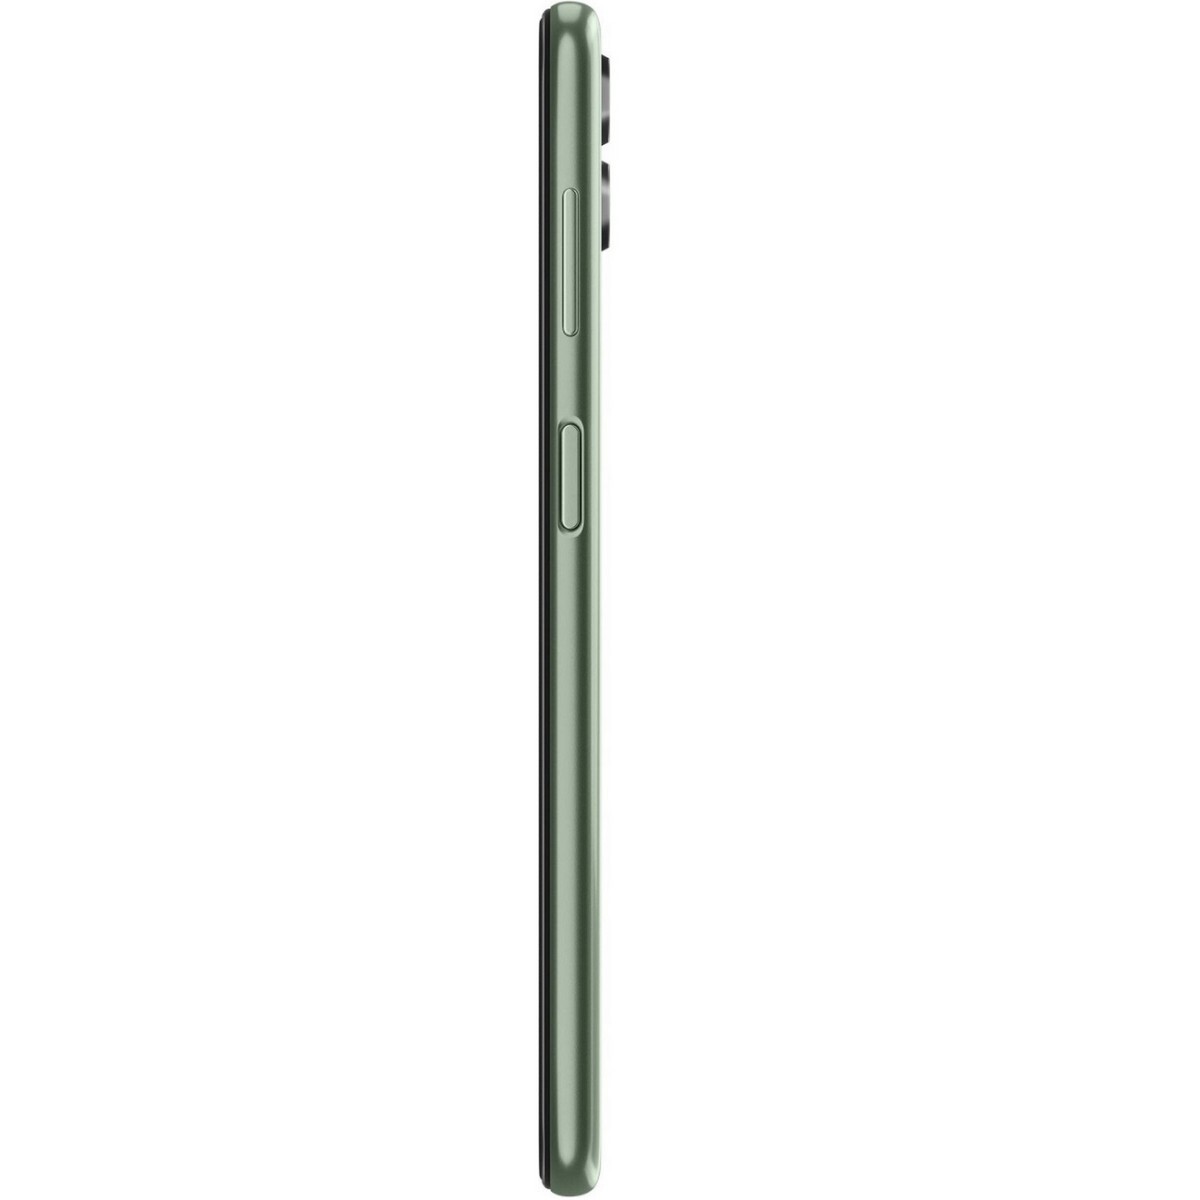 Samsung E146 F14 5G 6/128 GB GOAT Green